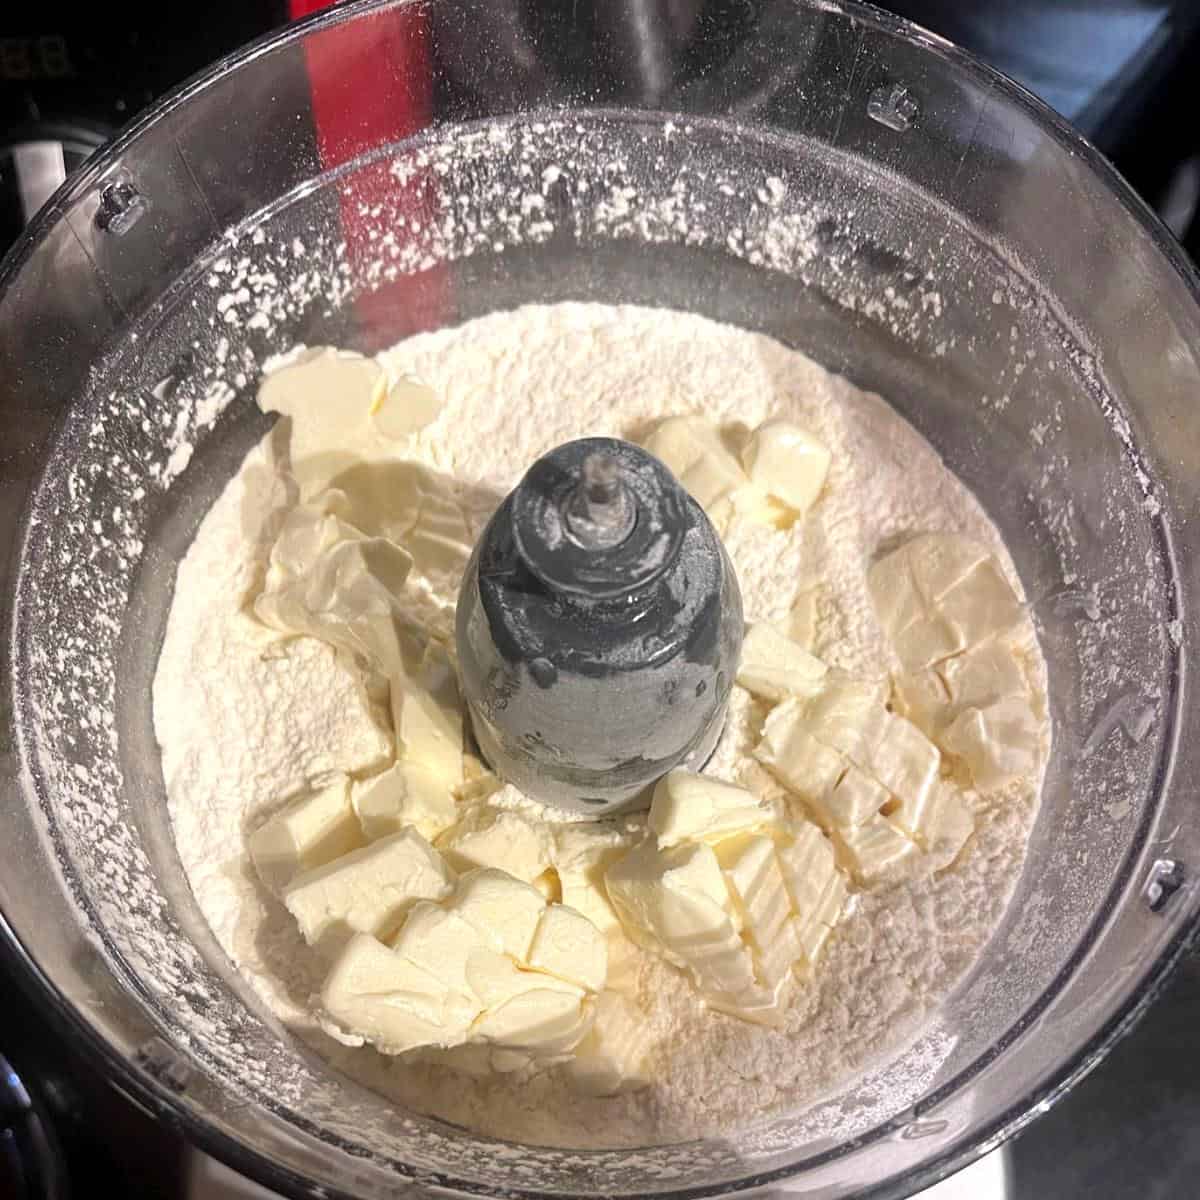 Vegan butter added to flour for vegan empanada dough.